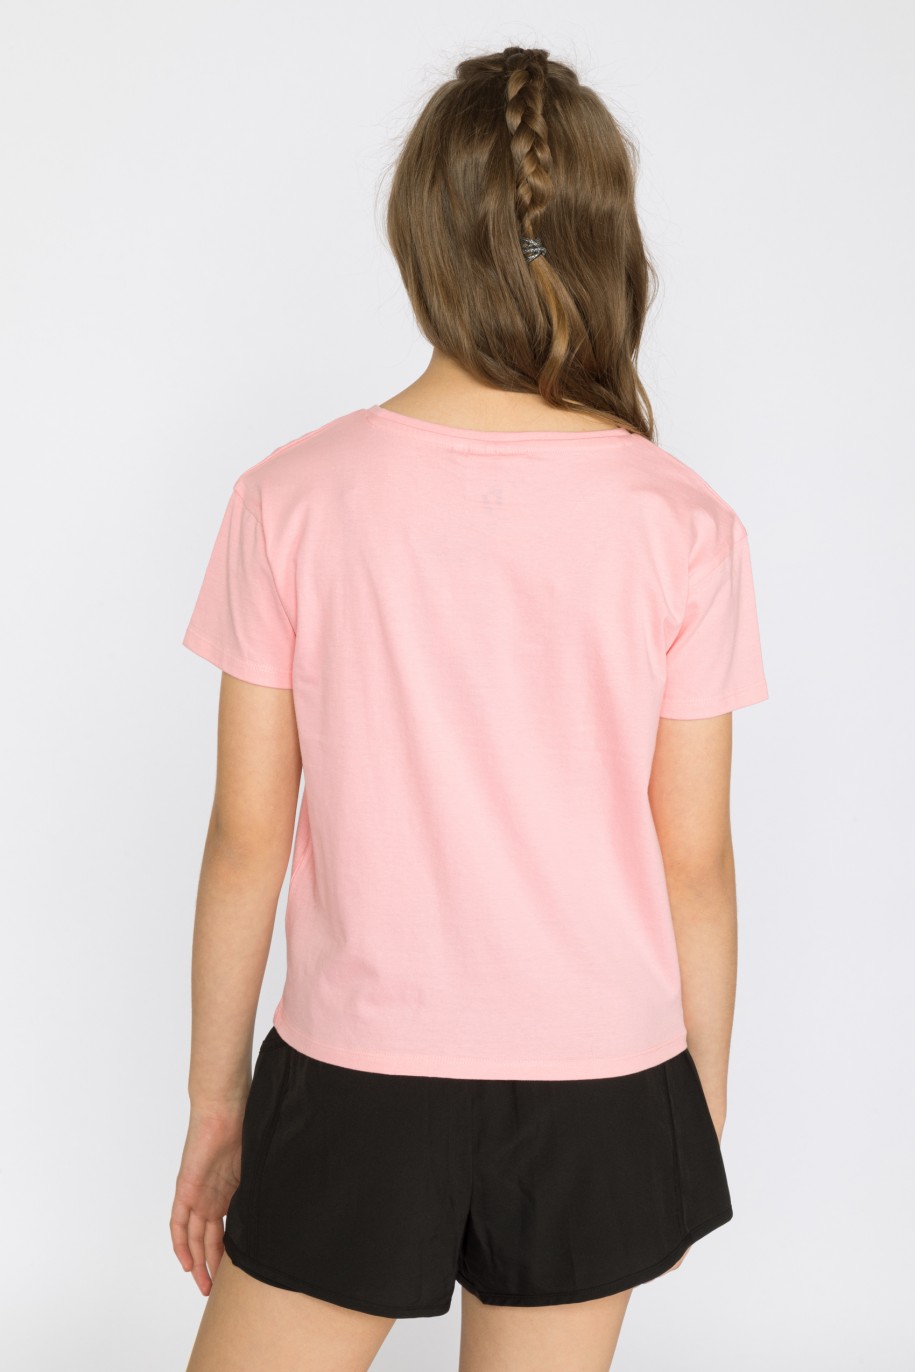 Różowy t-shirt dla dziewczyny HARLEY QUINN - 29908